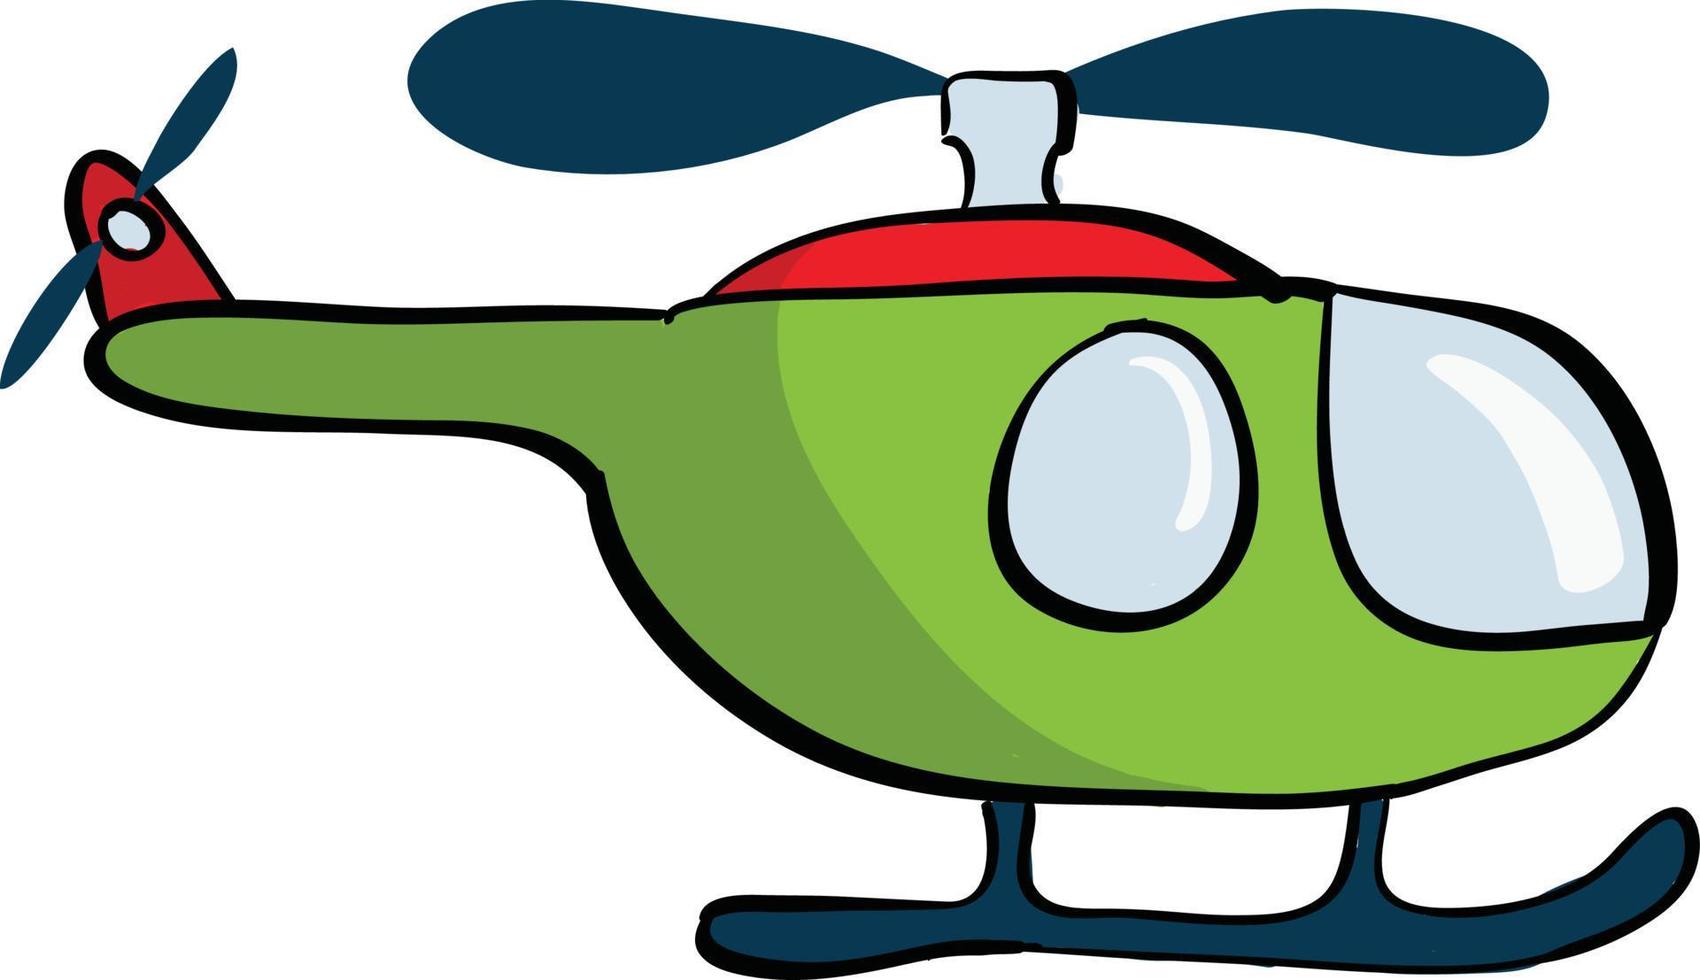 Helicóptero verde, ilustración, vector sobre fondo blanco.